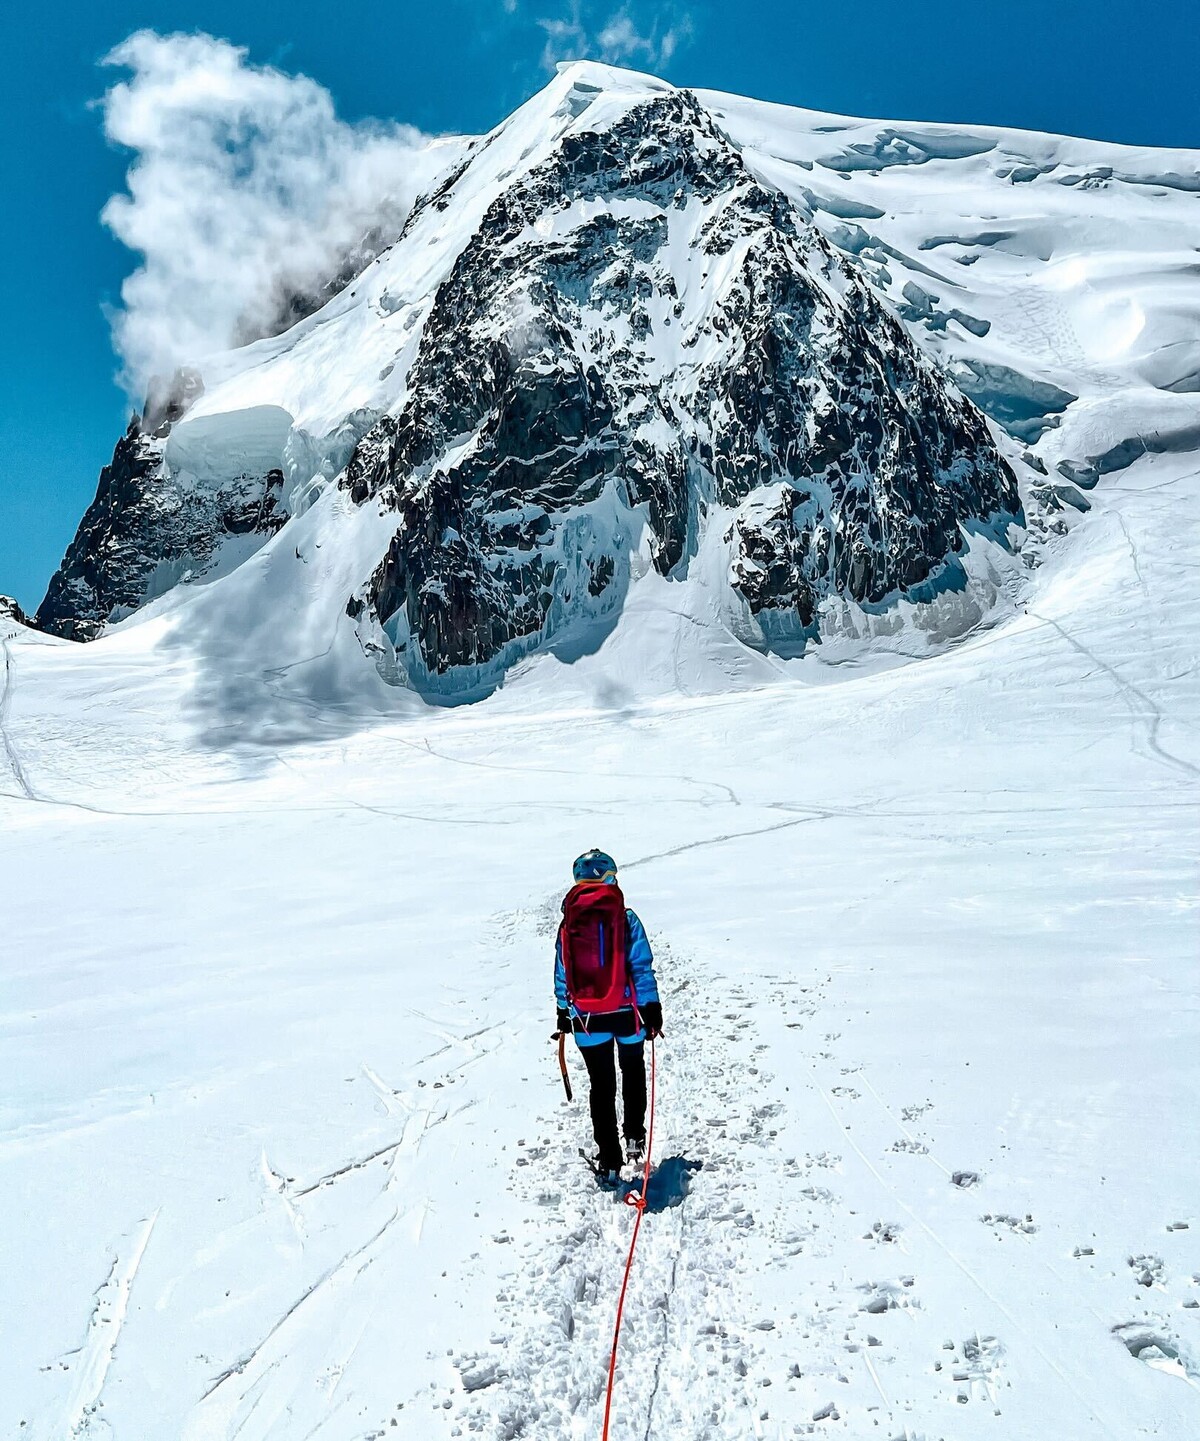 Zuzana sa venuje horolezectvu aj ľadolezectvu. V súčasnosti sa pripravuje na výstup na jeden z vrchov v Himalájach. 